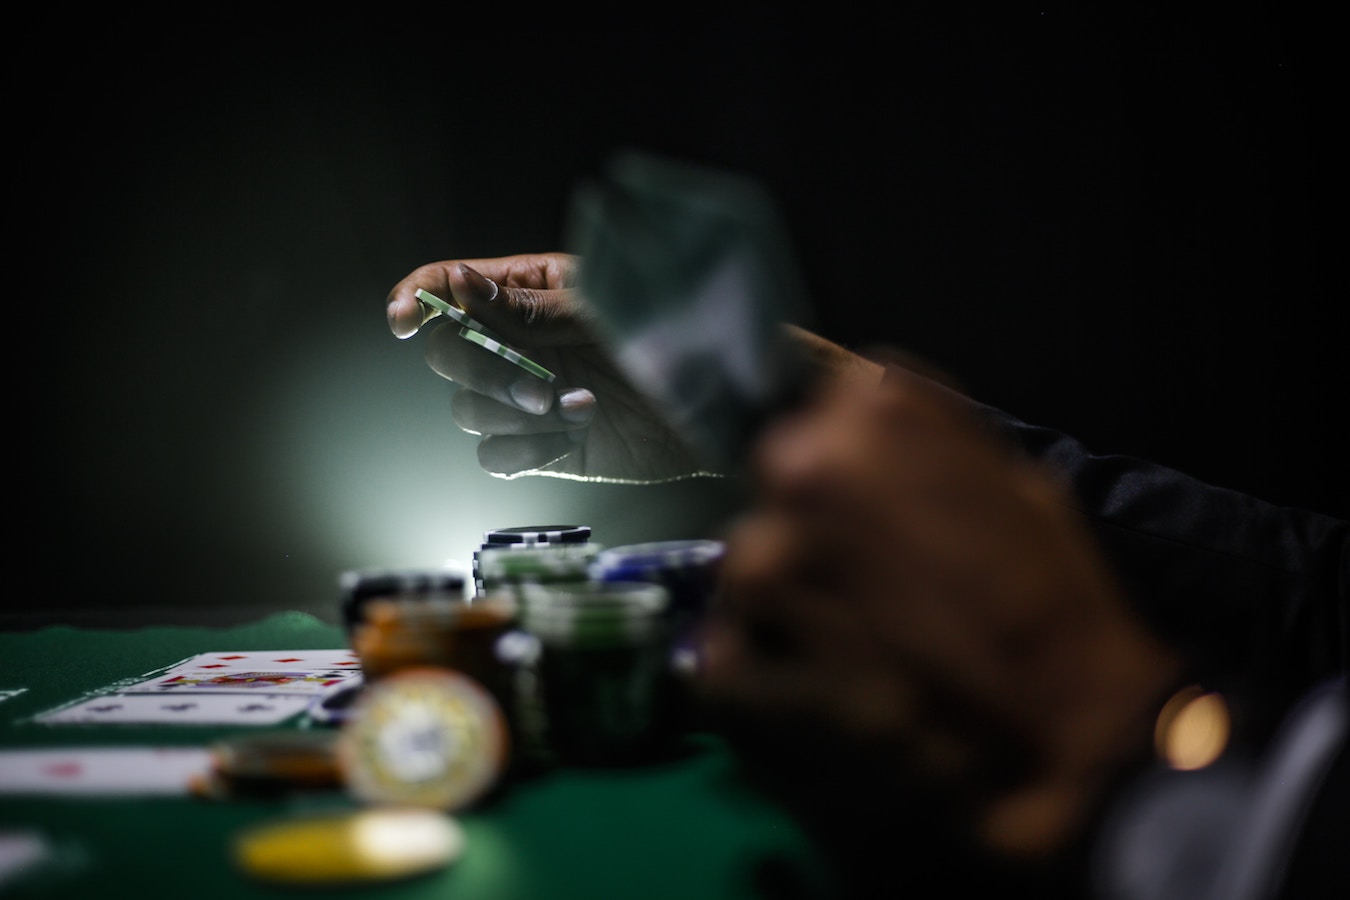 Image fiches-pratiques/professionnels-du-divertissement/comment-devenir-joueur-de-poker-pro/